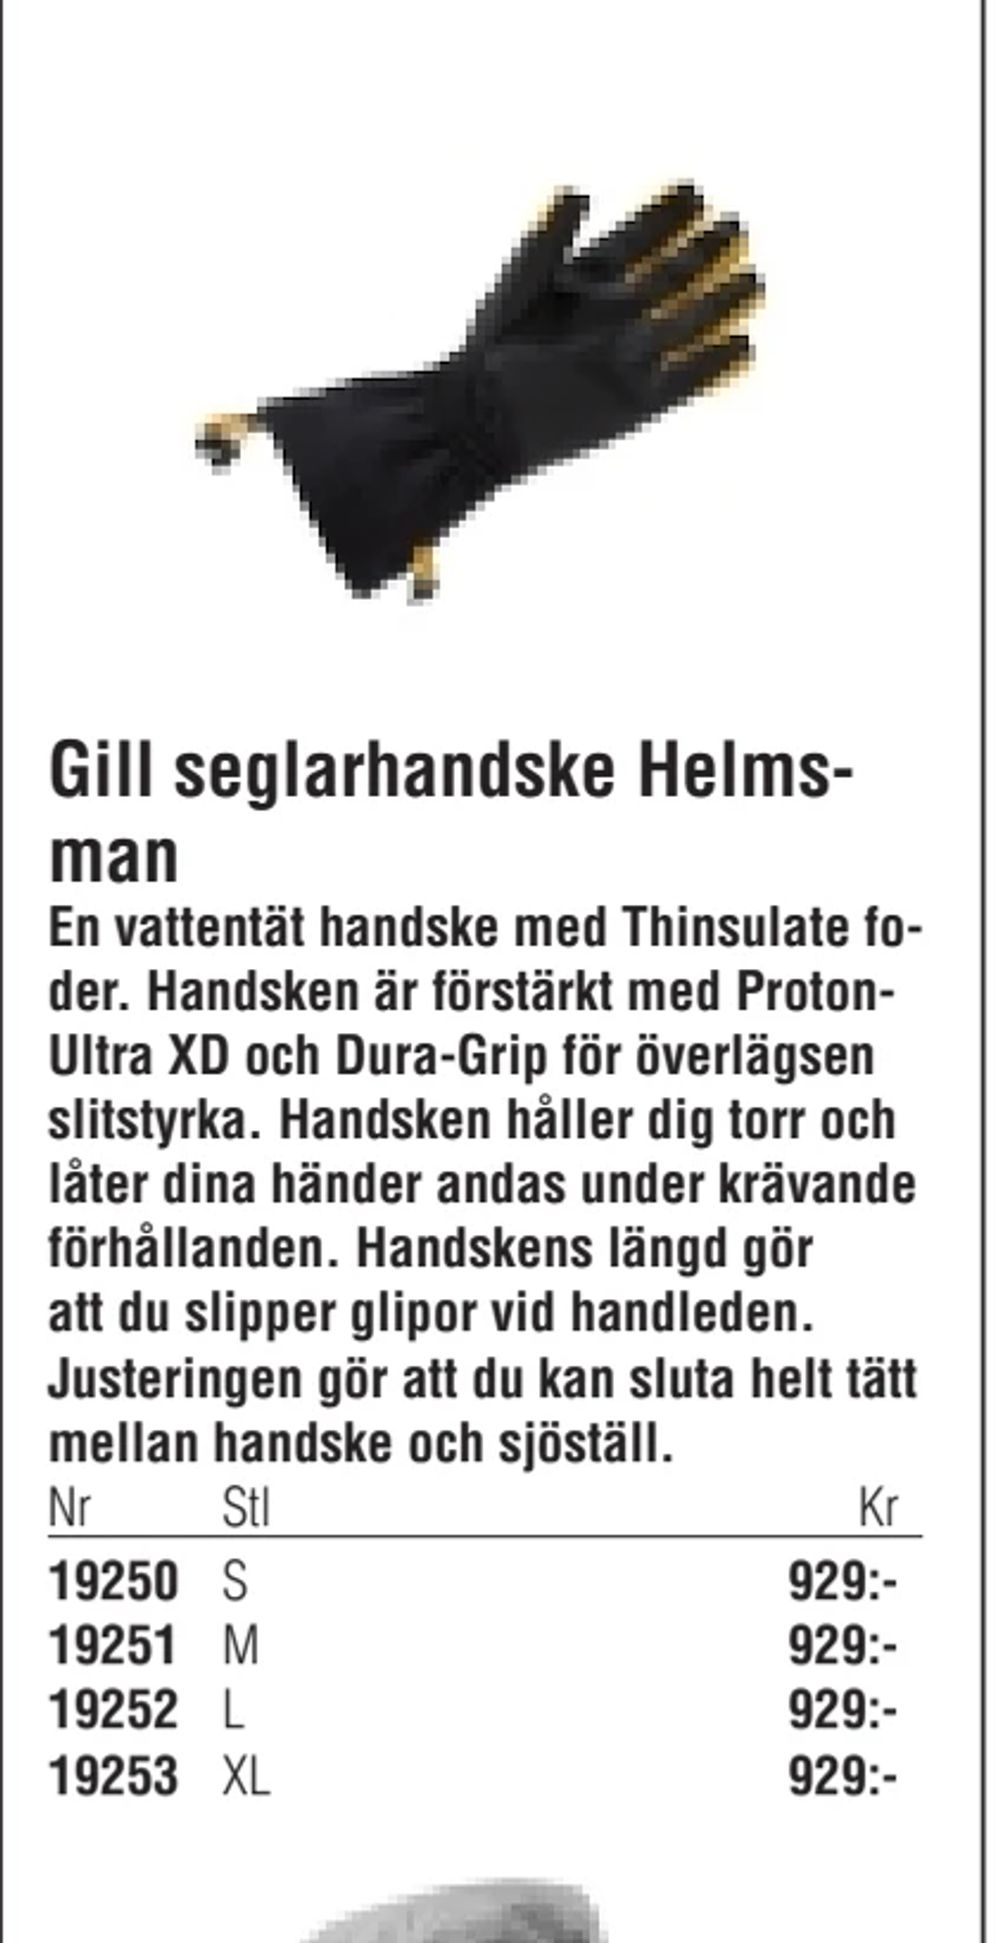 Erbjudanden på Gill seglarhandske Helmsman från Erlandsons Brygga för 929 kr